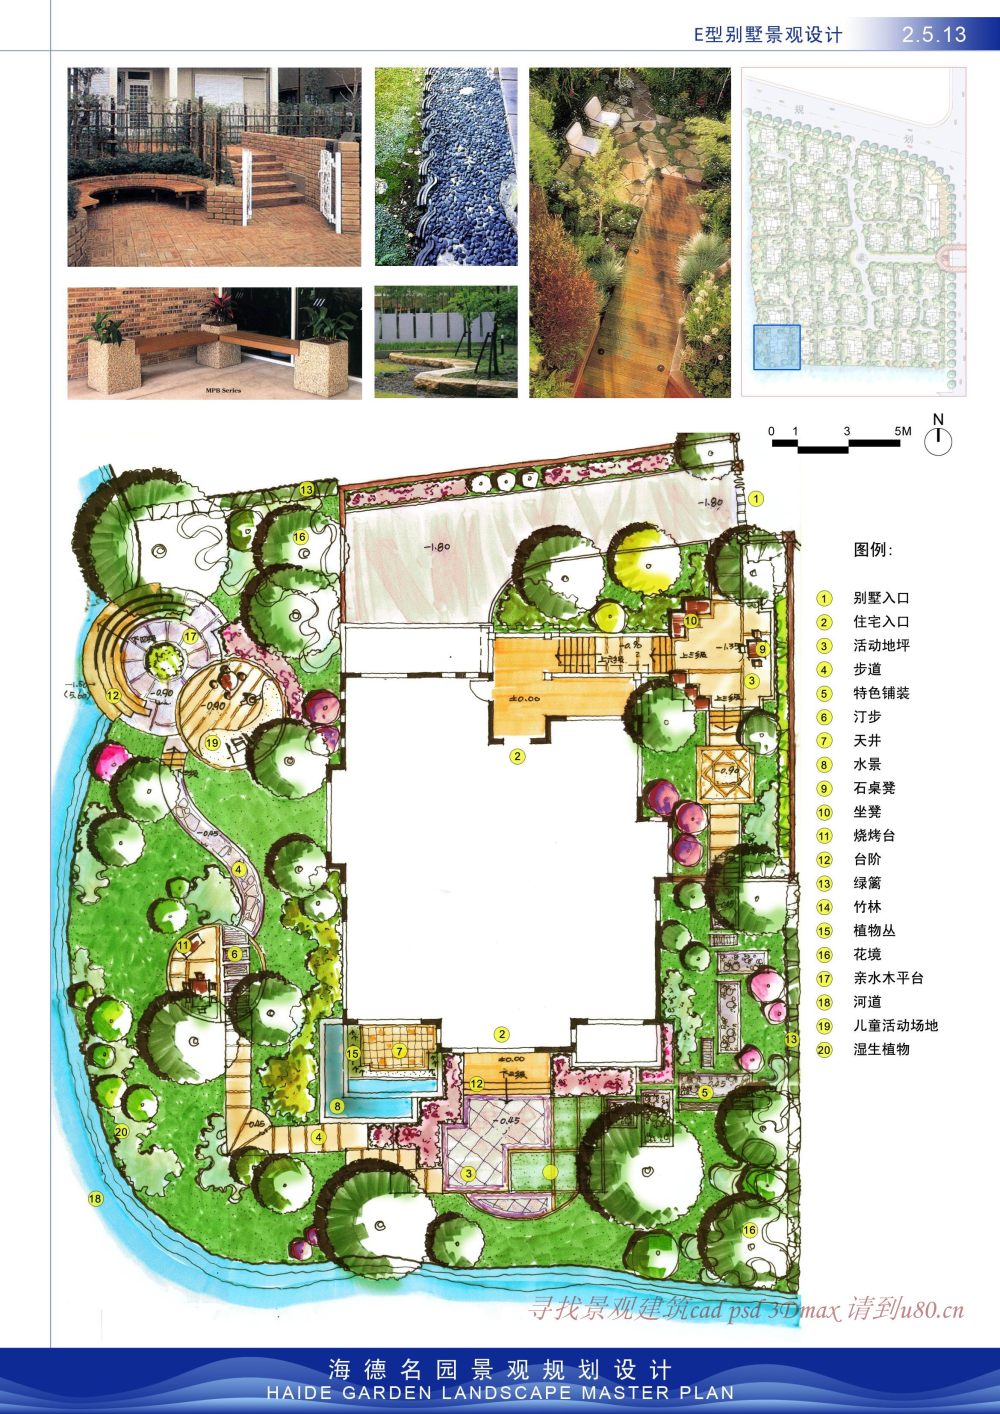 海德名园景观规划设计_2.5.13.jpg